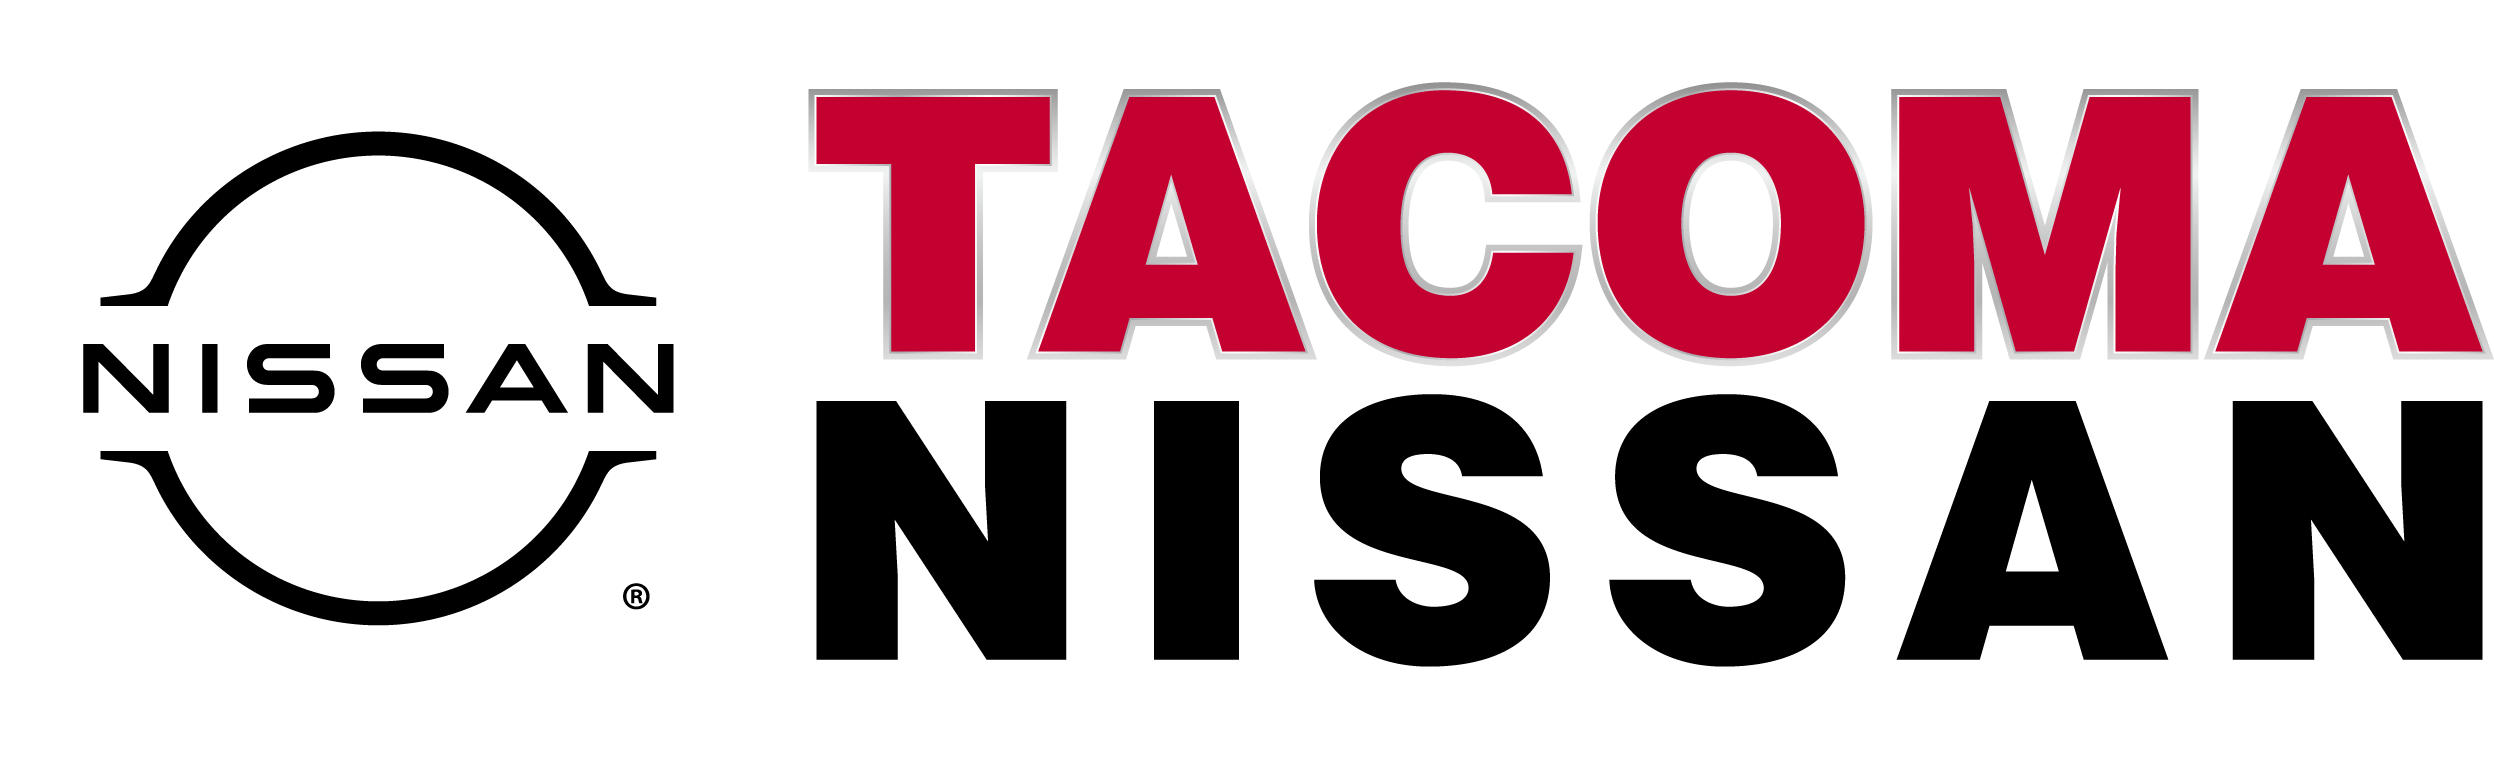 Tacoma Nissan